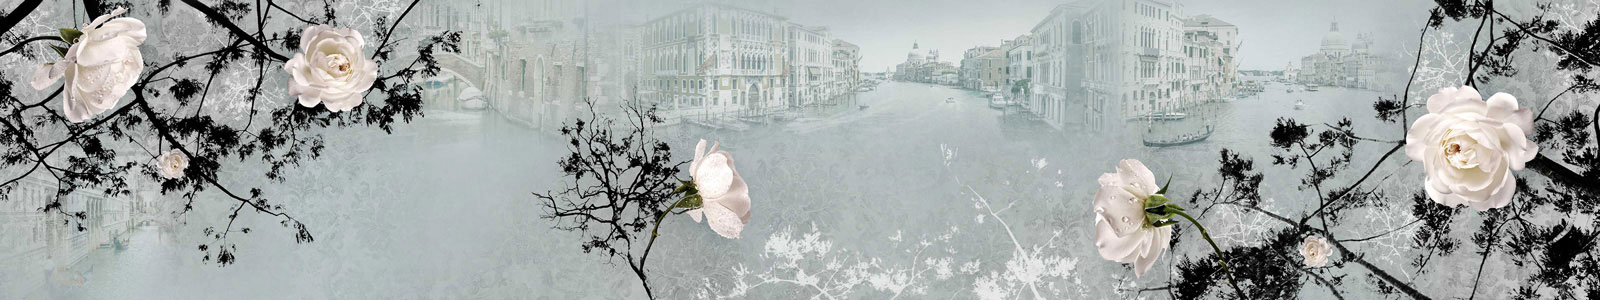 №4622 - Белые розы с каплями воды и Венеция на фоне